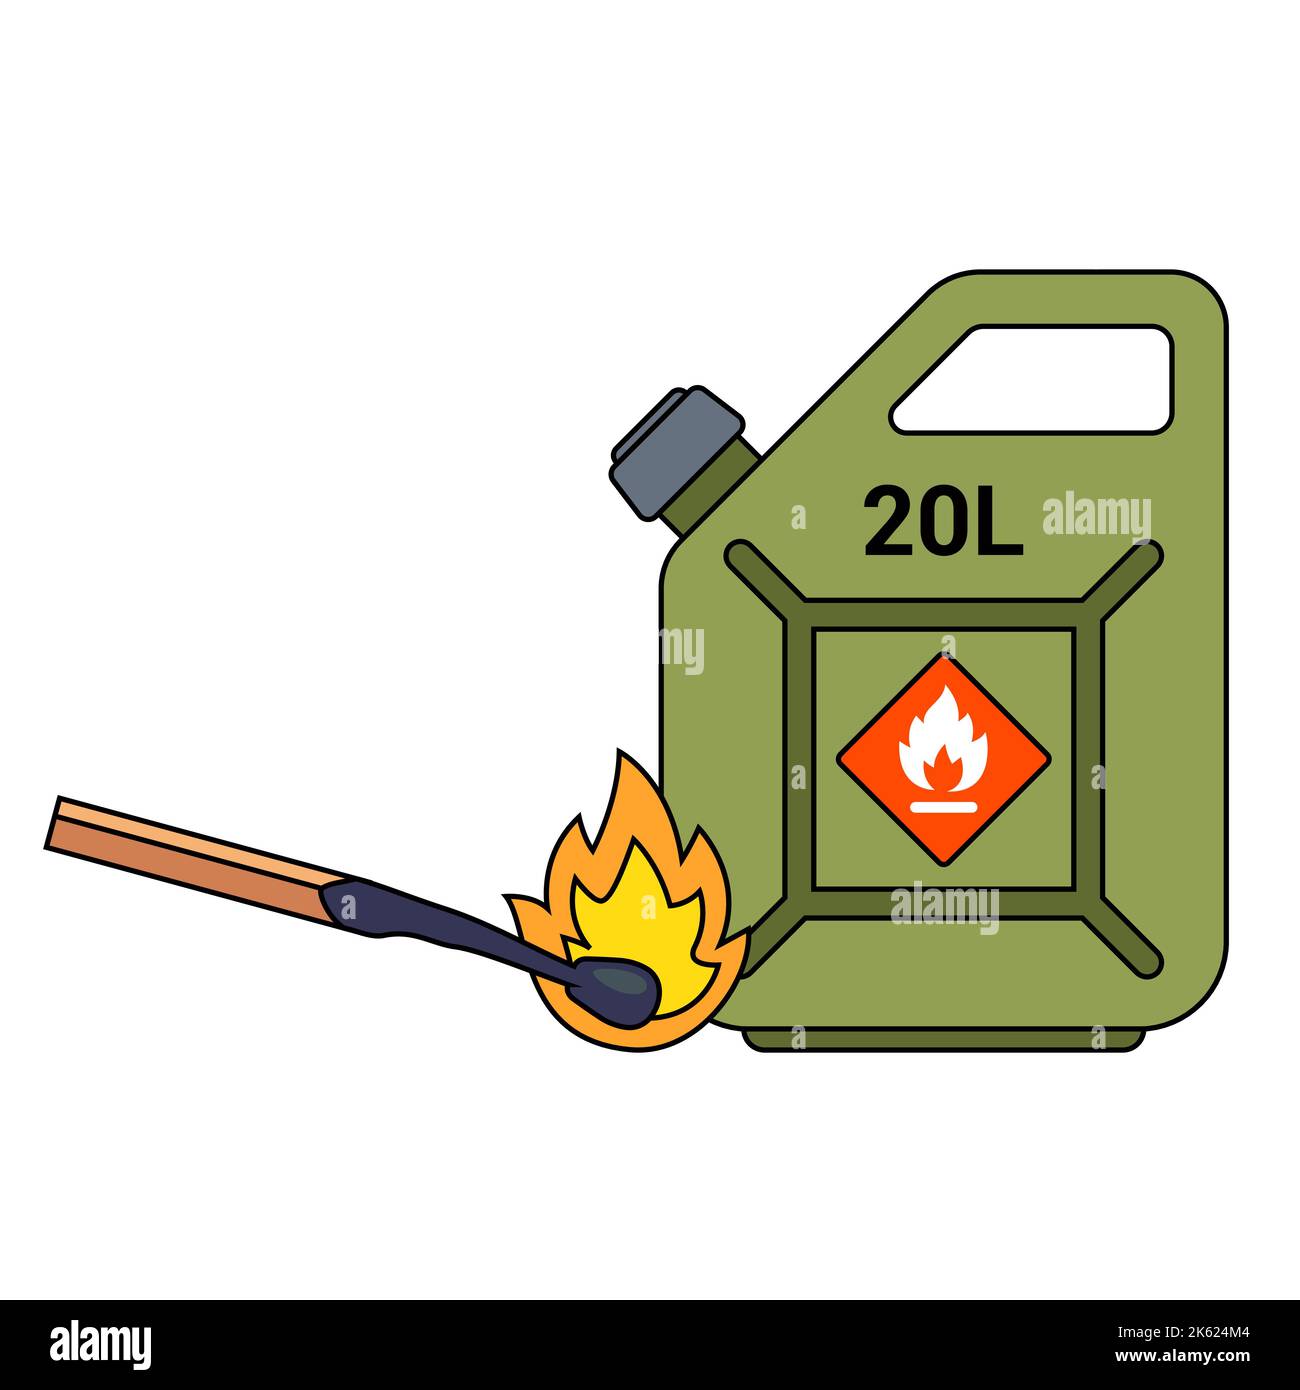 manipulation imprudente du feu à proximité d'une cartouche d'essence. illustration à vecteur plat. Illustration de Vecteur